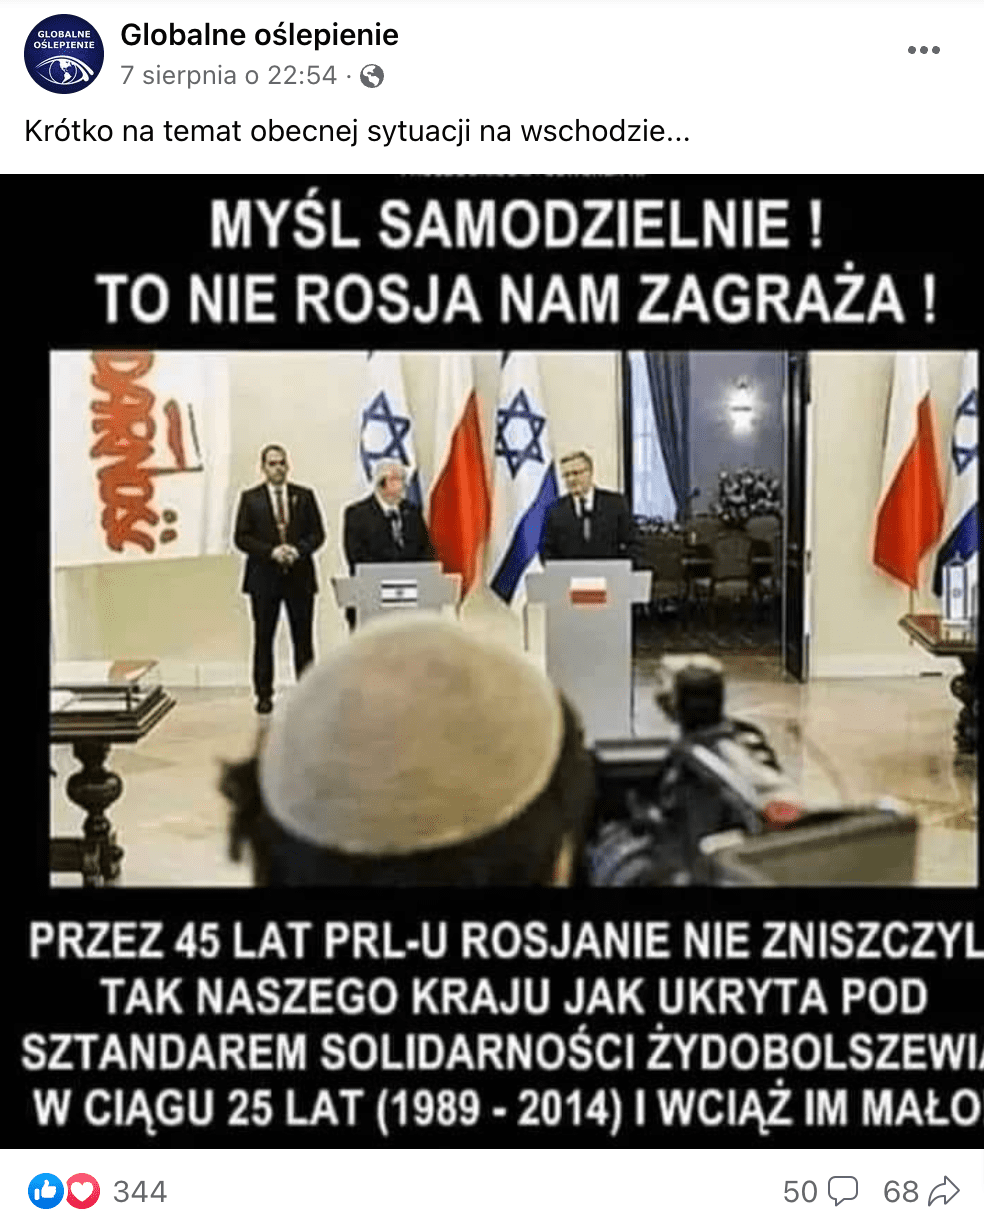 Zrzut ekranu omawianego posta. Widoczni są prezydenci Polski i Izraela w 2014 roku na tle polskich i izraelskich flag.